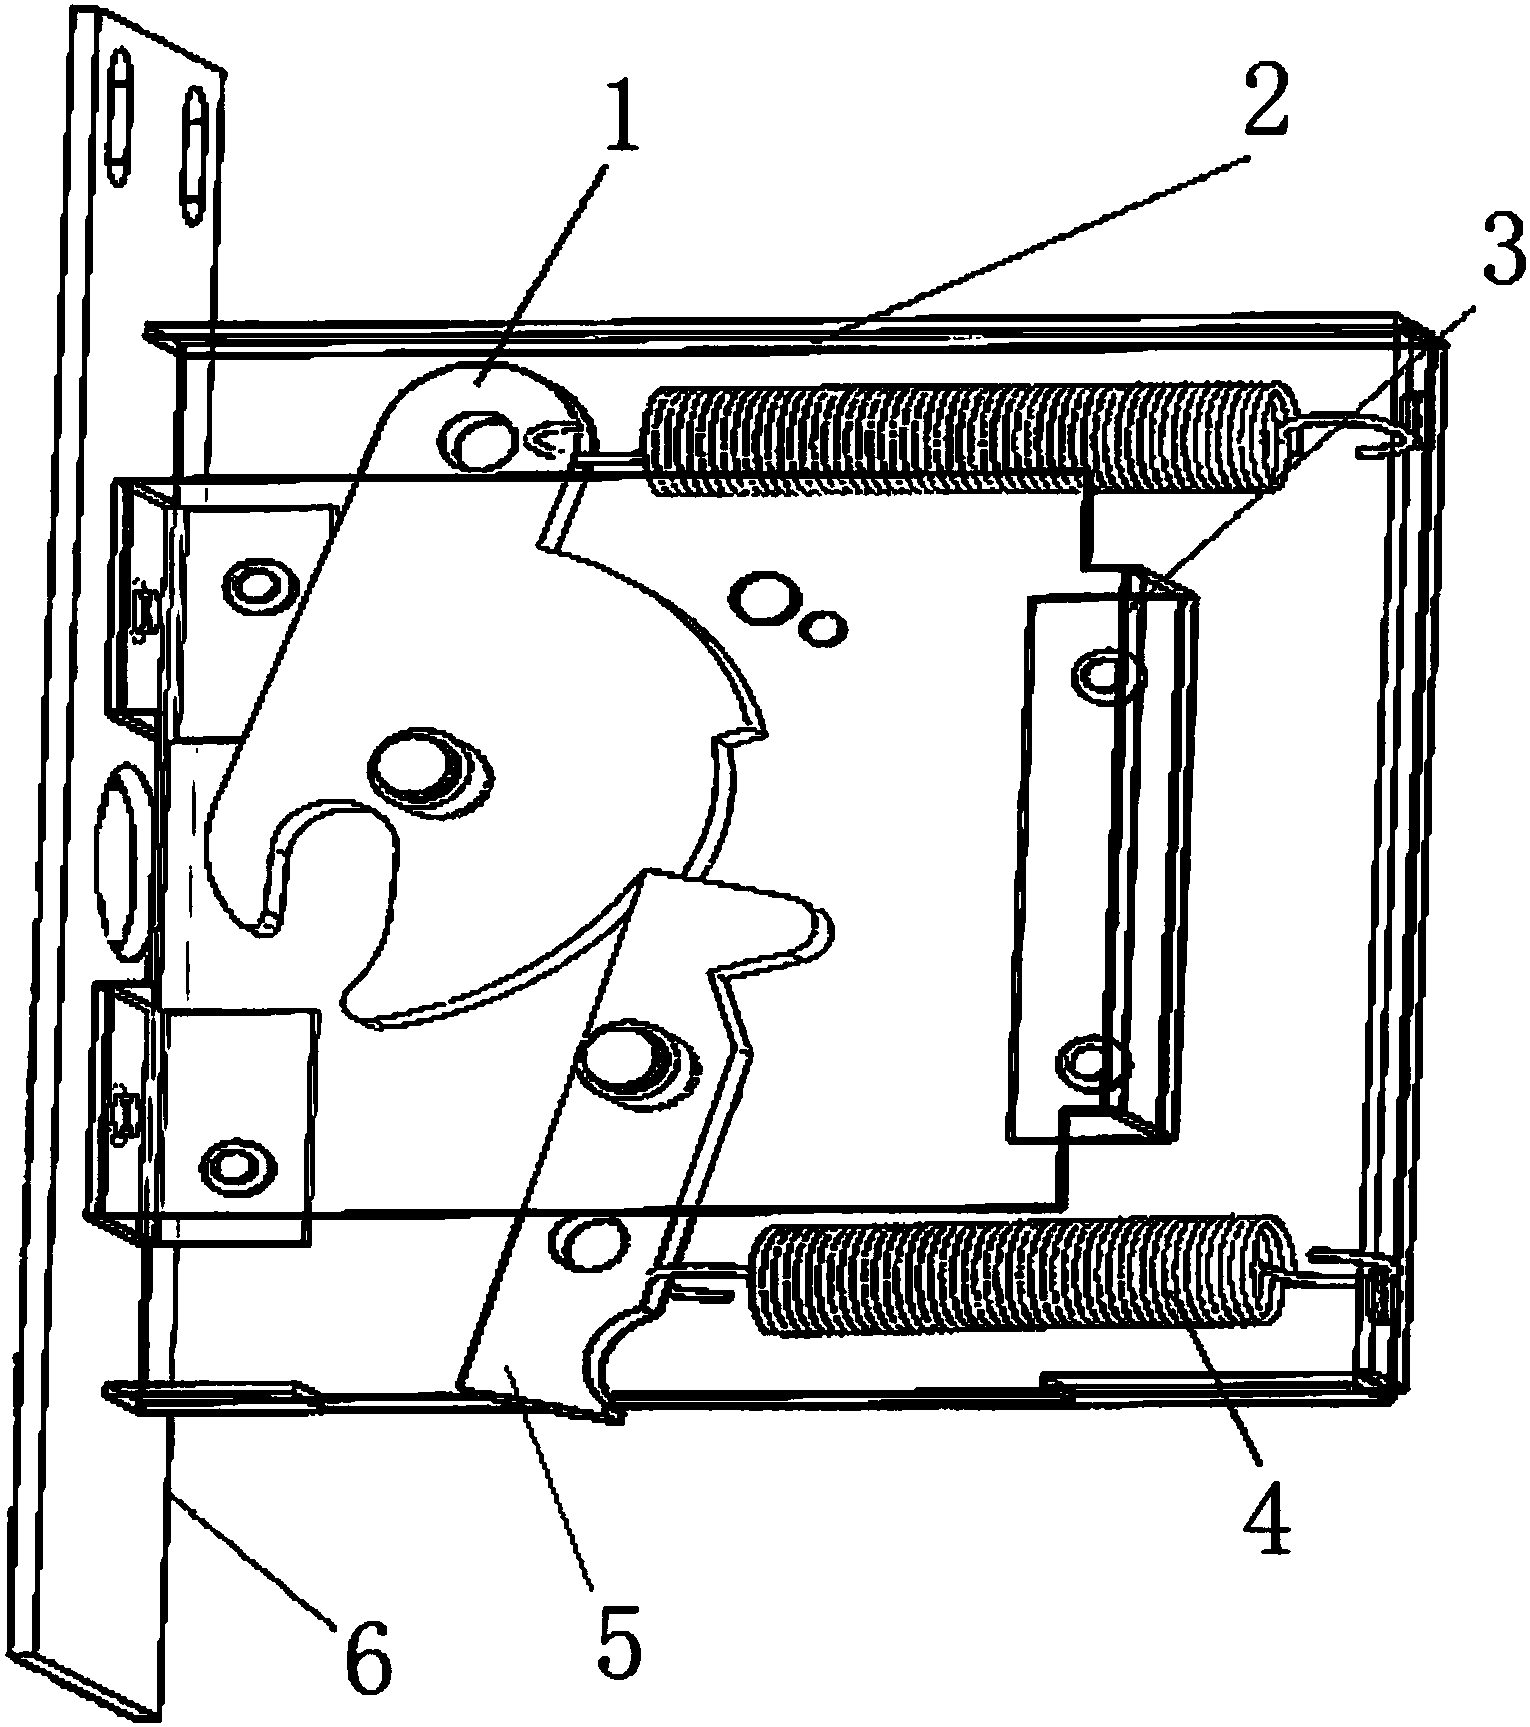 本发明公开了一种按压式门锁机构,包括锁扣,拉簧a,推杆,锁固定板,拉簧